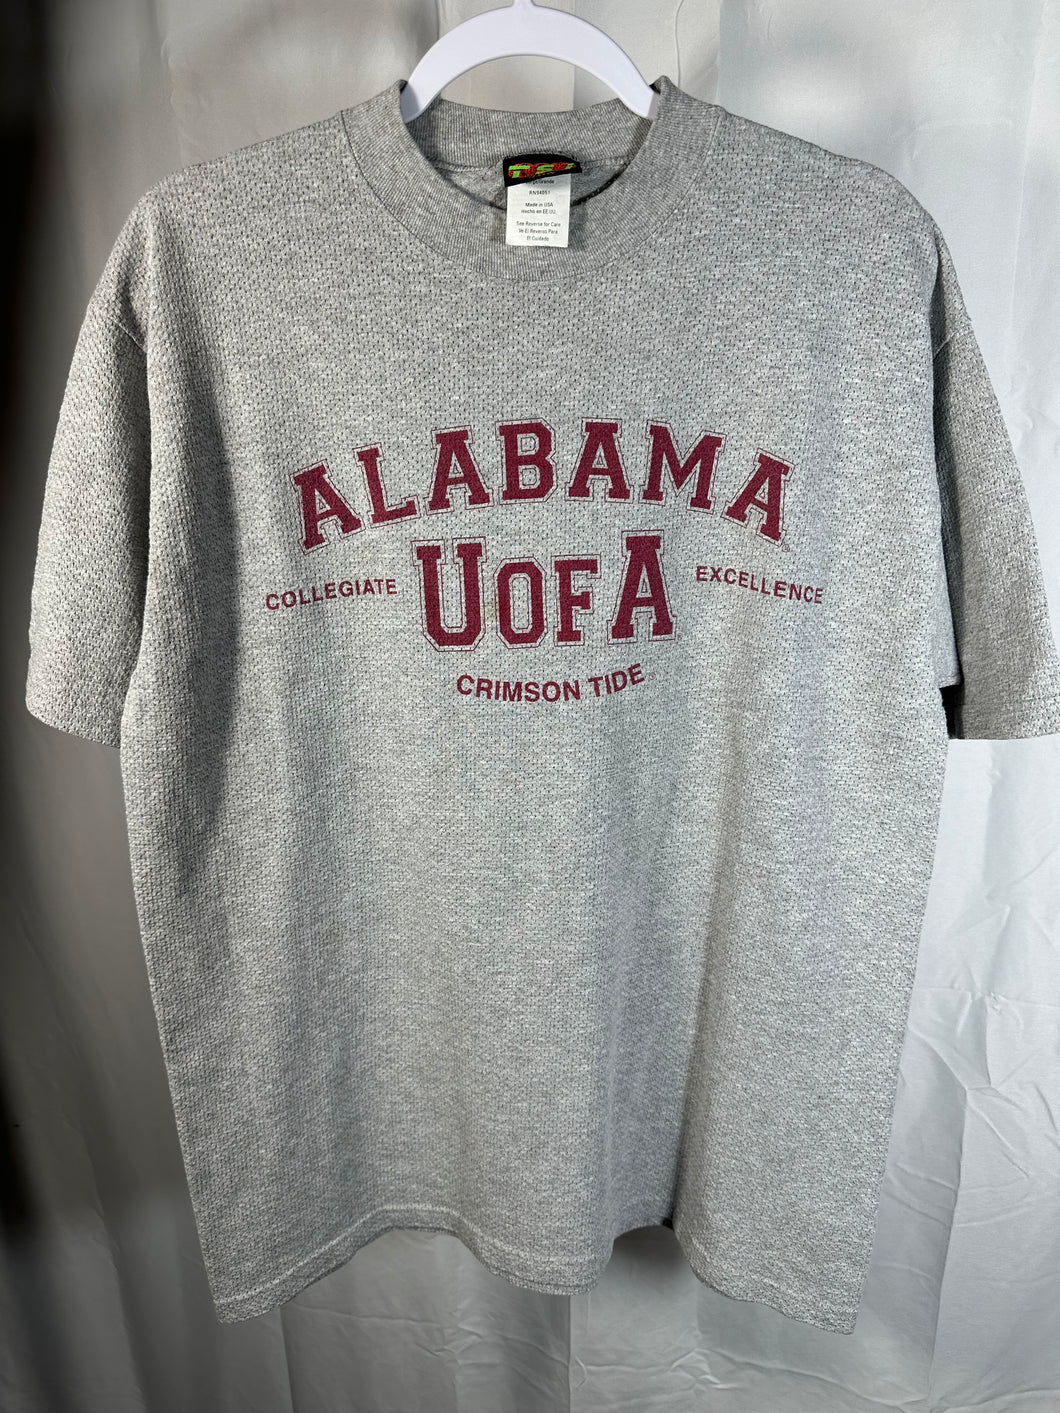 Vintage University of Alabama Grey T-Shirt Large